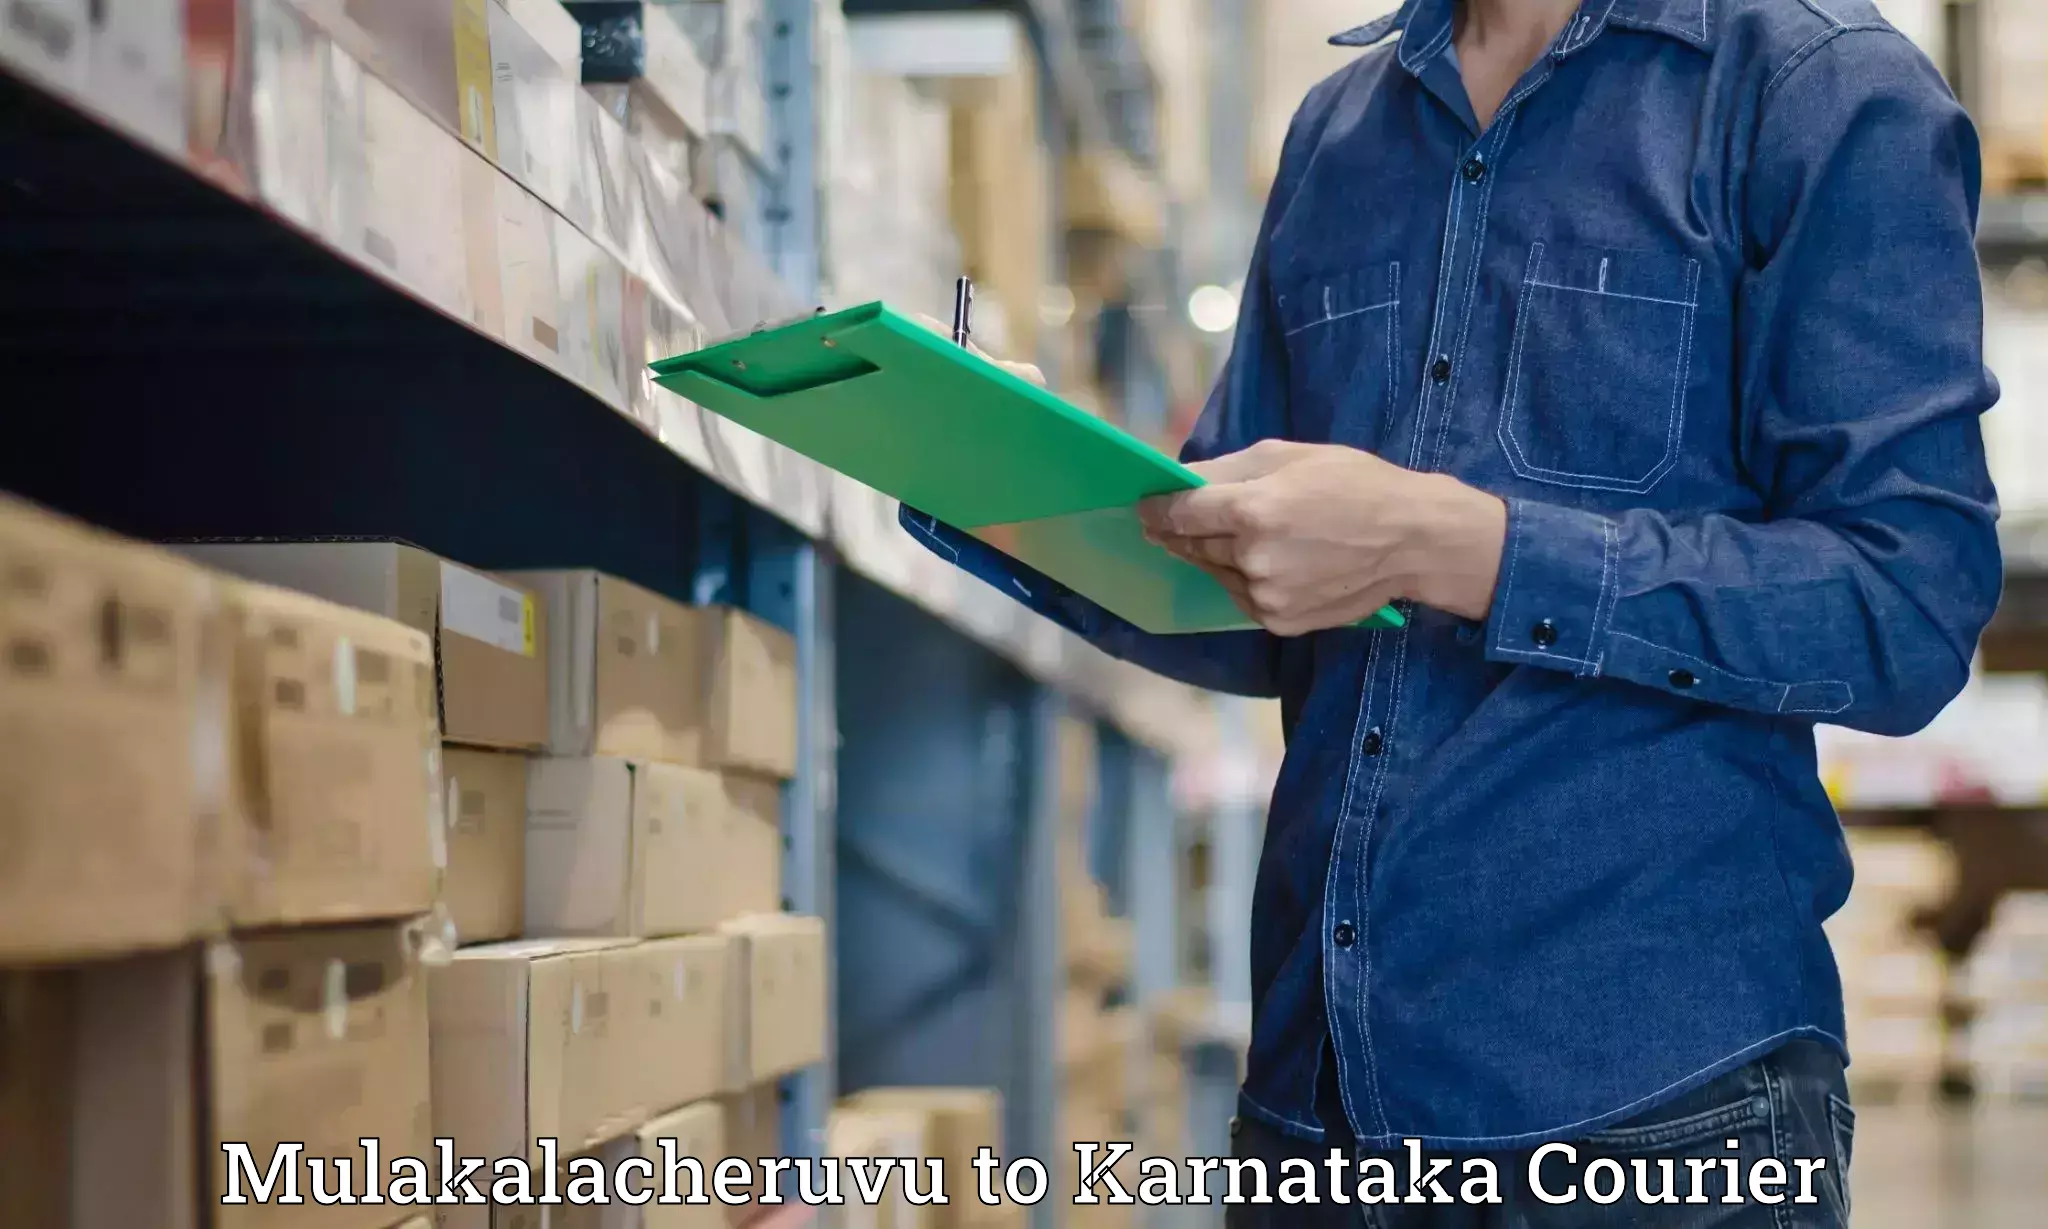 Dynamic courier operations Mulakalacheruvu to Karnataka